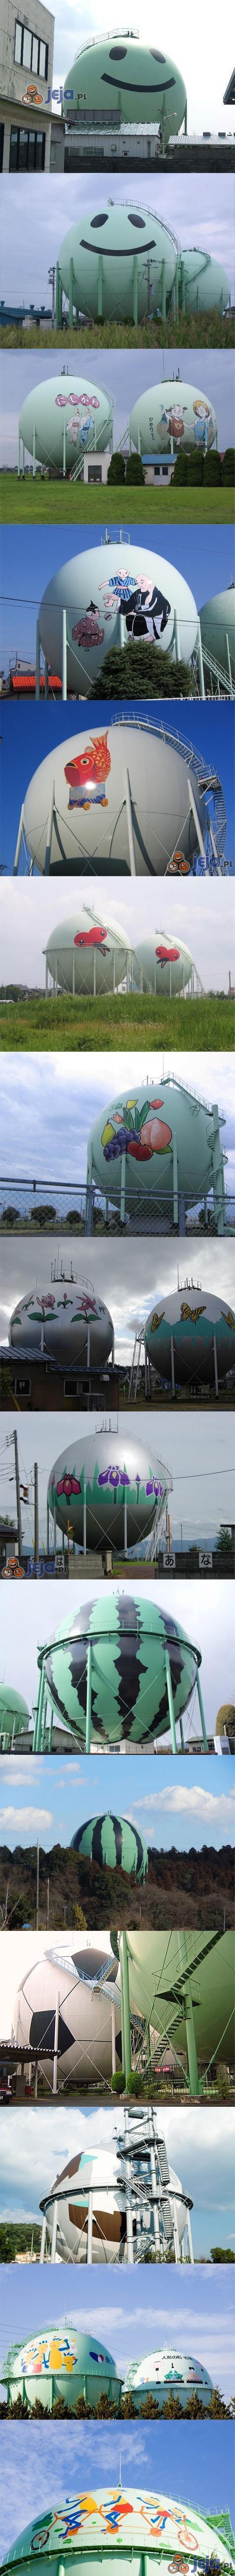 W Japonii dekorują zbiorniki na gaz